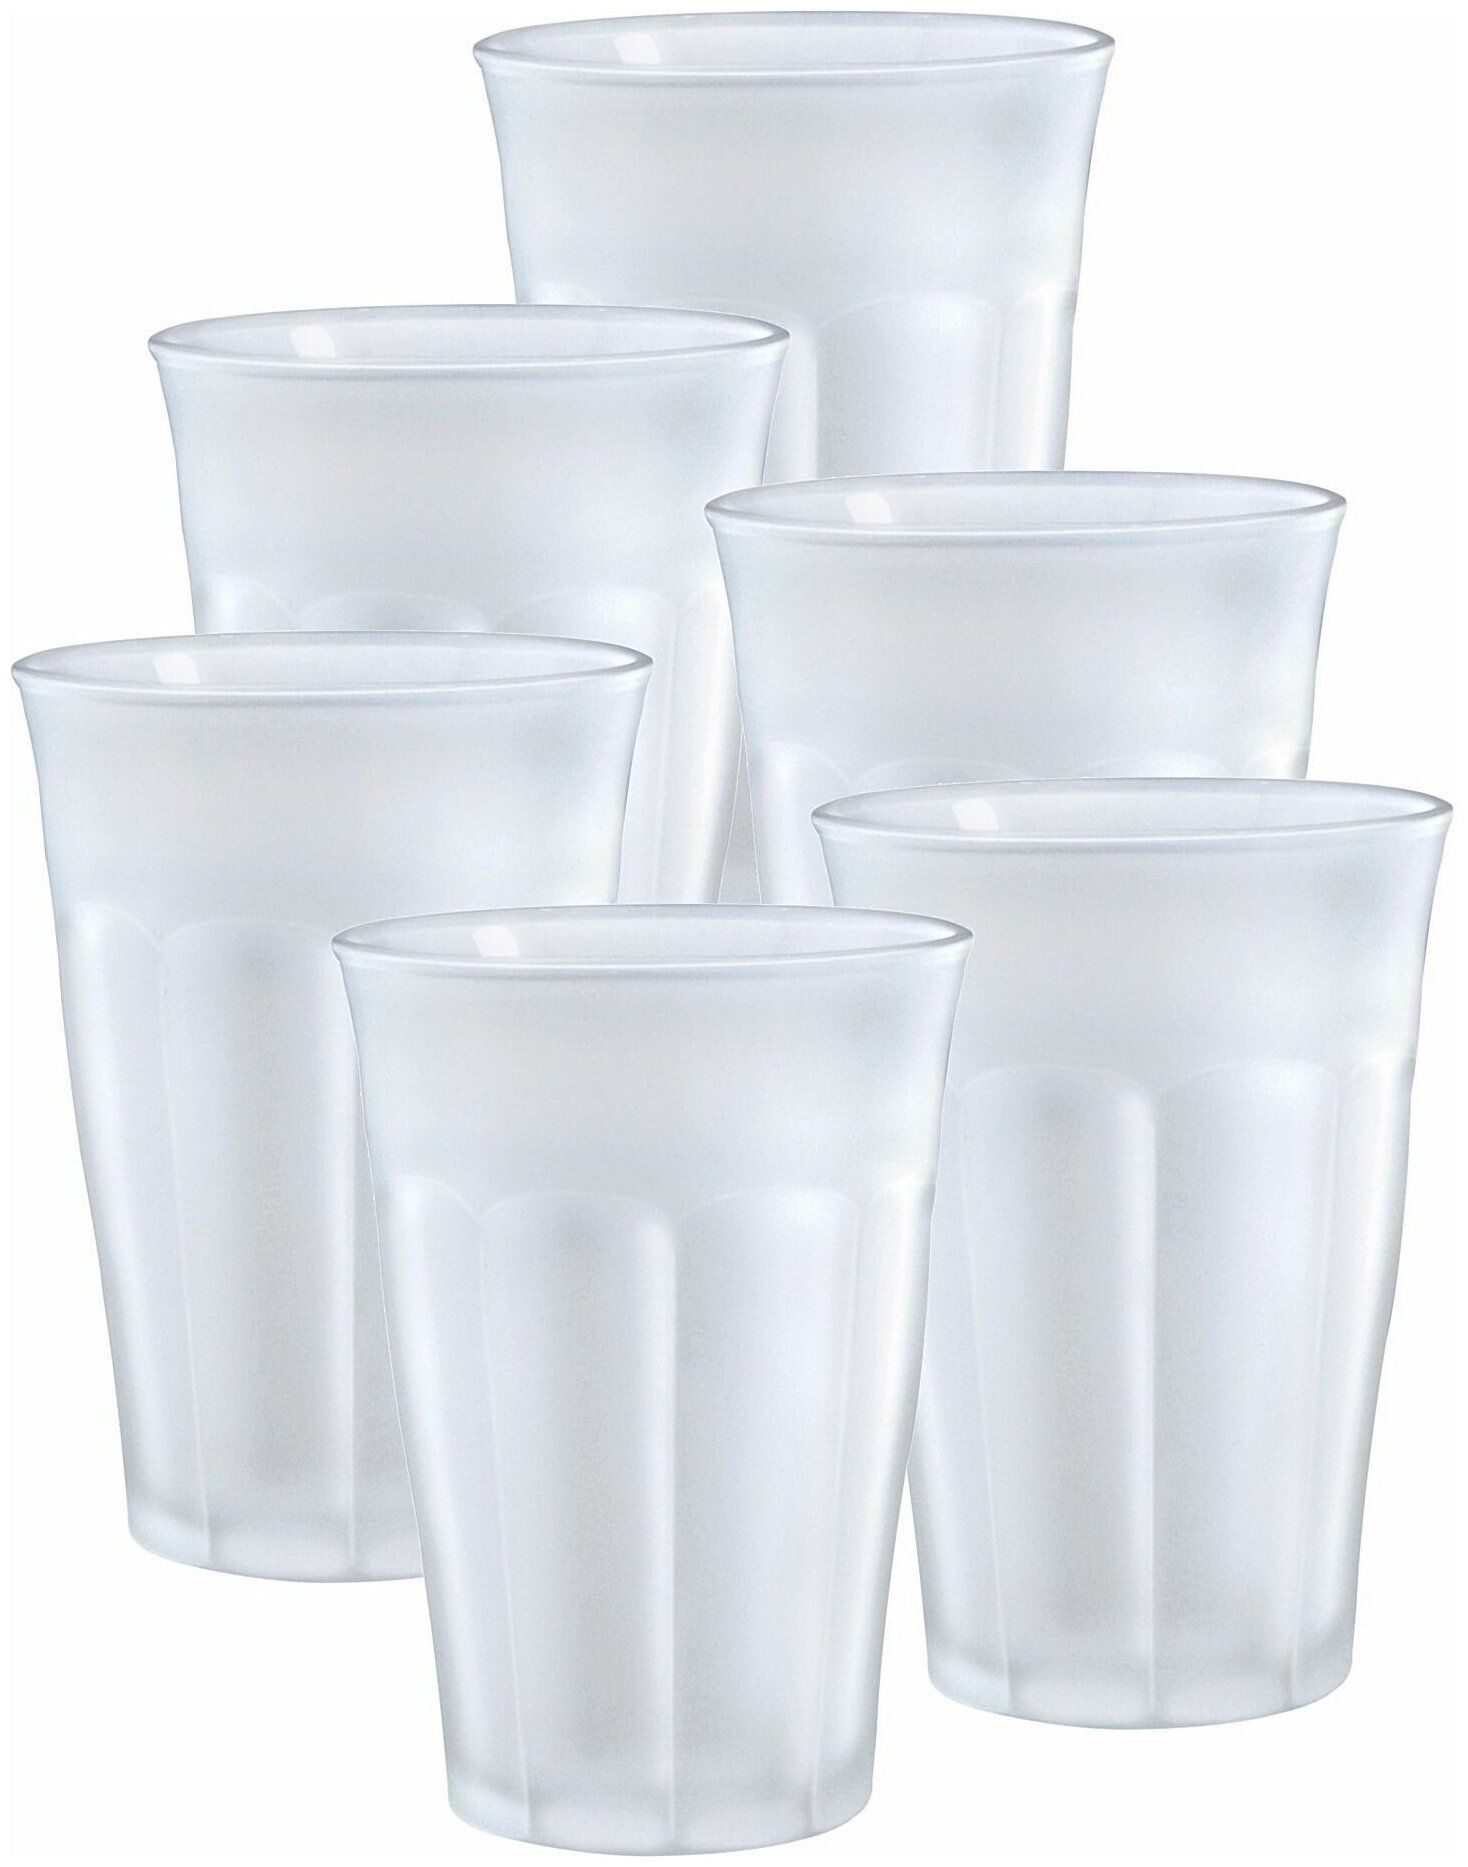 Набор стаканов французских PICARDIE матовые 6шт 360мл DURALEX 1029SR06C11SG набор стаканов французских picardie marine 6шт 250мл duralex 1027bb06a0111